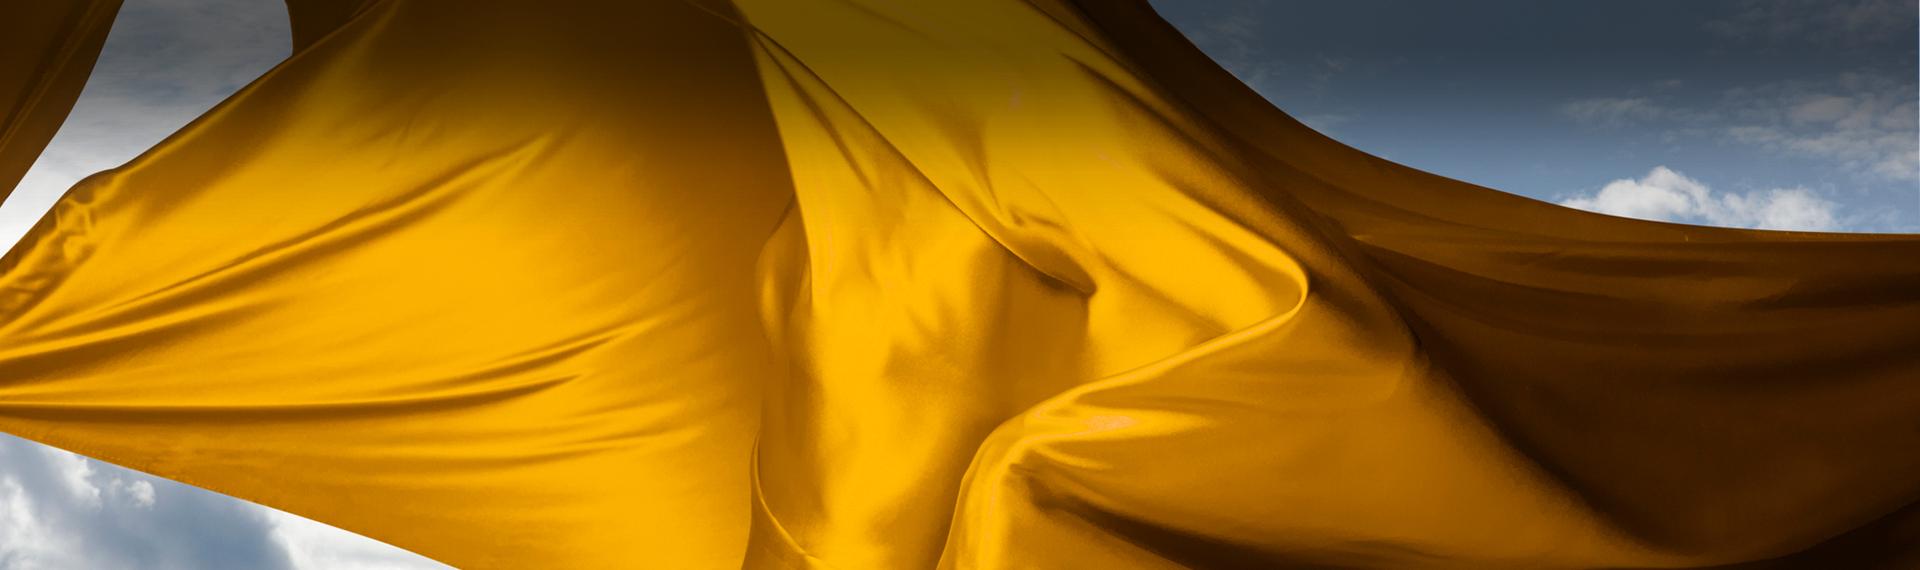 Slajd #3 - Modny żółty materiał